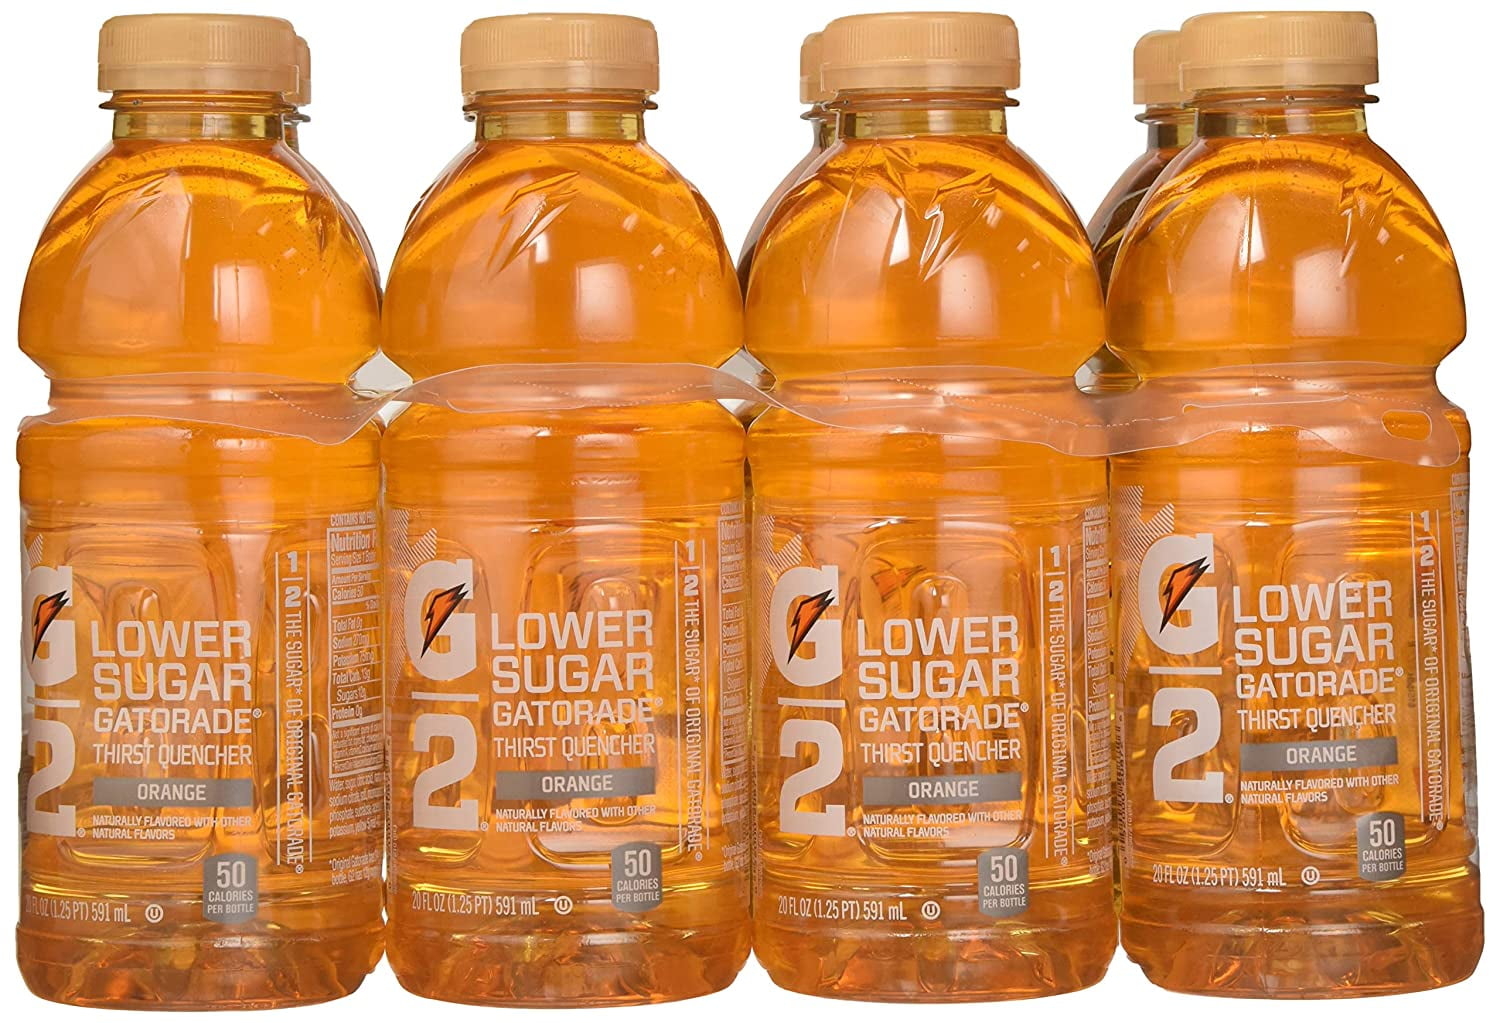 Ncaa Syracuse Orange 32oz Chrome Thirst Hydration Water Bottle : Target